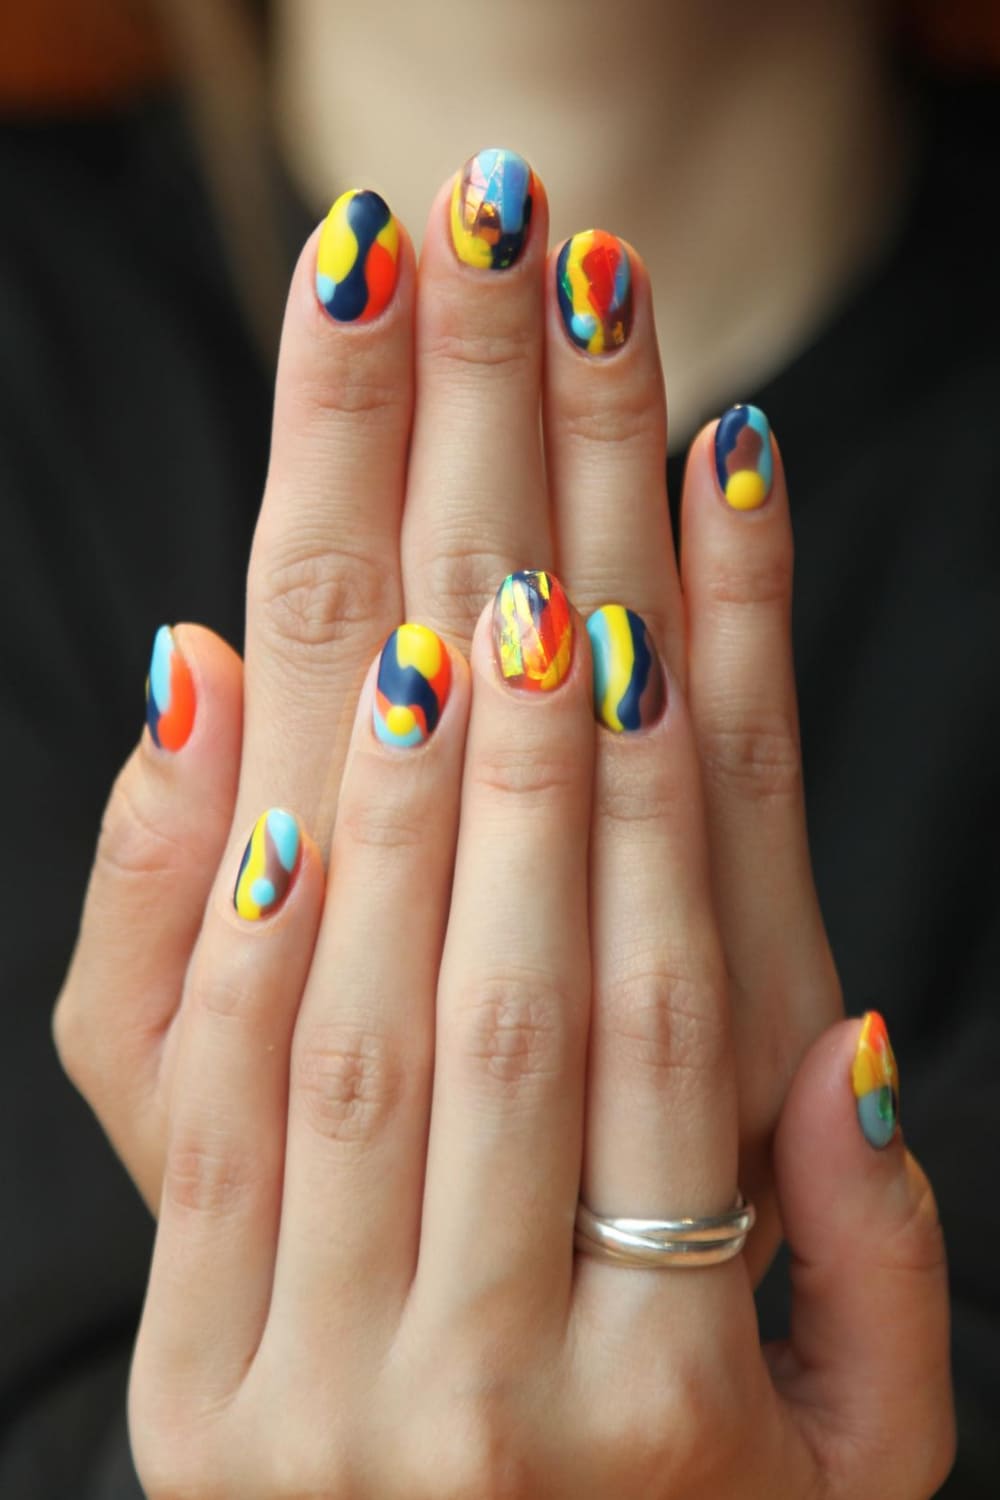 Две руки с укрепленными ногтями. На ногтях нанесен разноцветный лак.